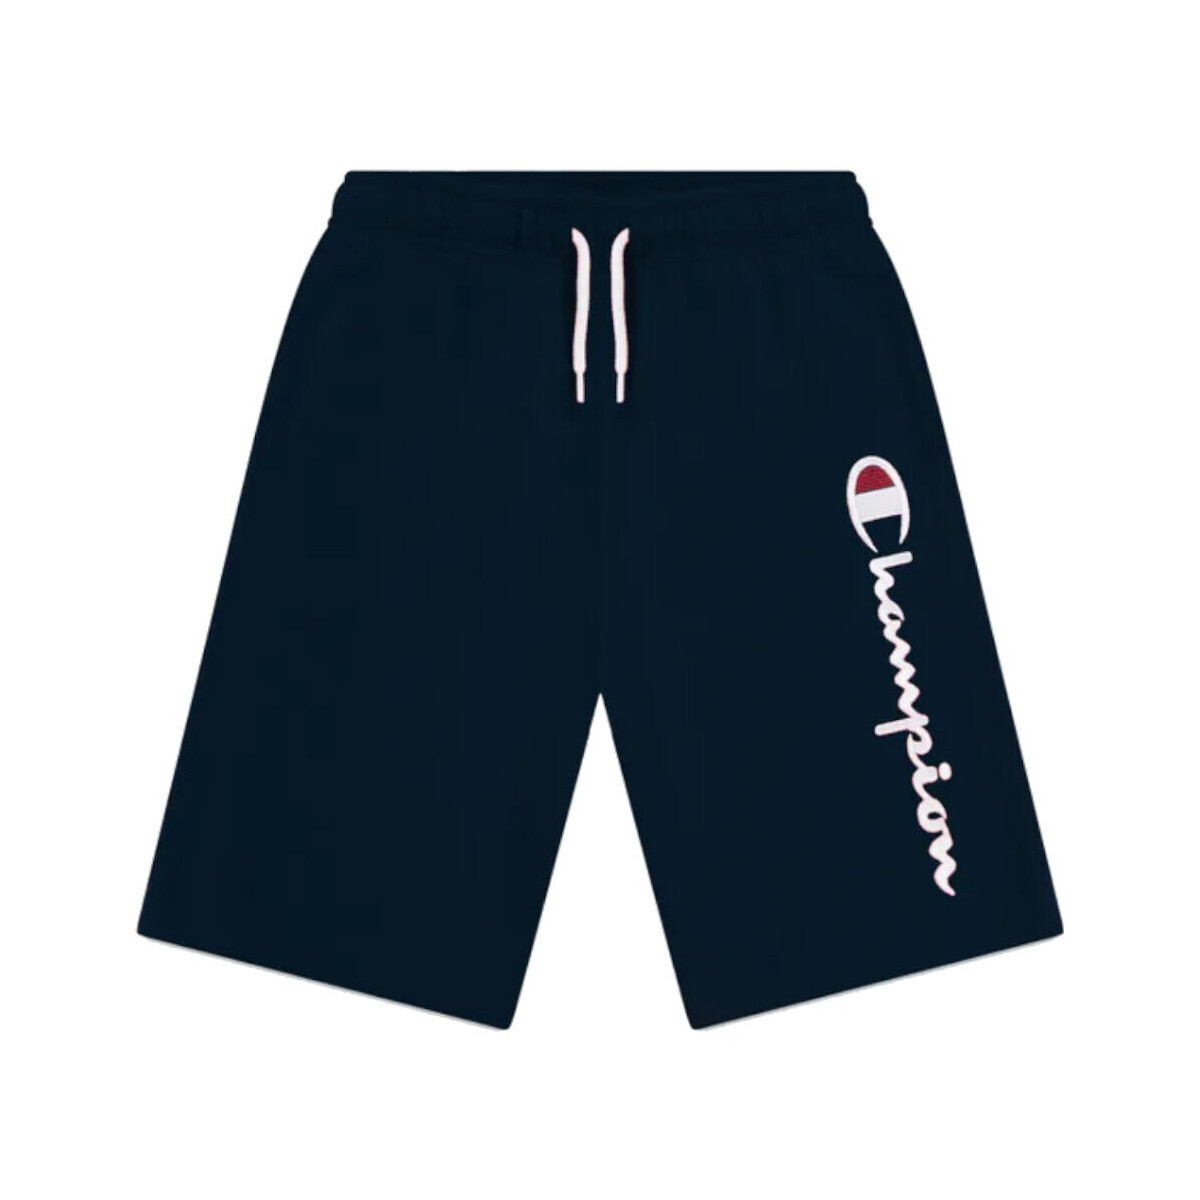 Kleidung Jungen Shorts / Bermudas Champion 306803 Blau